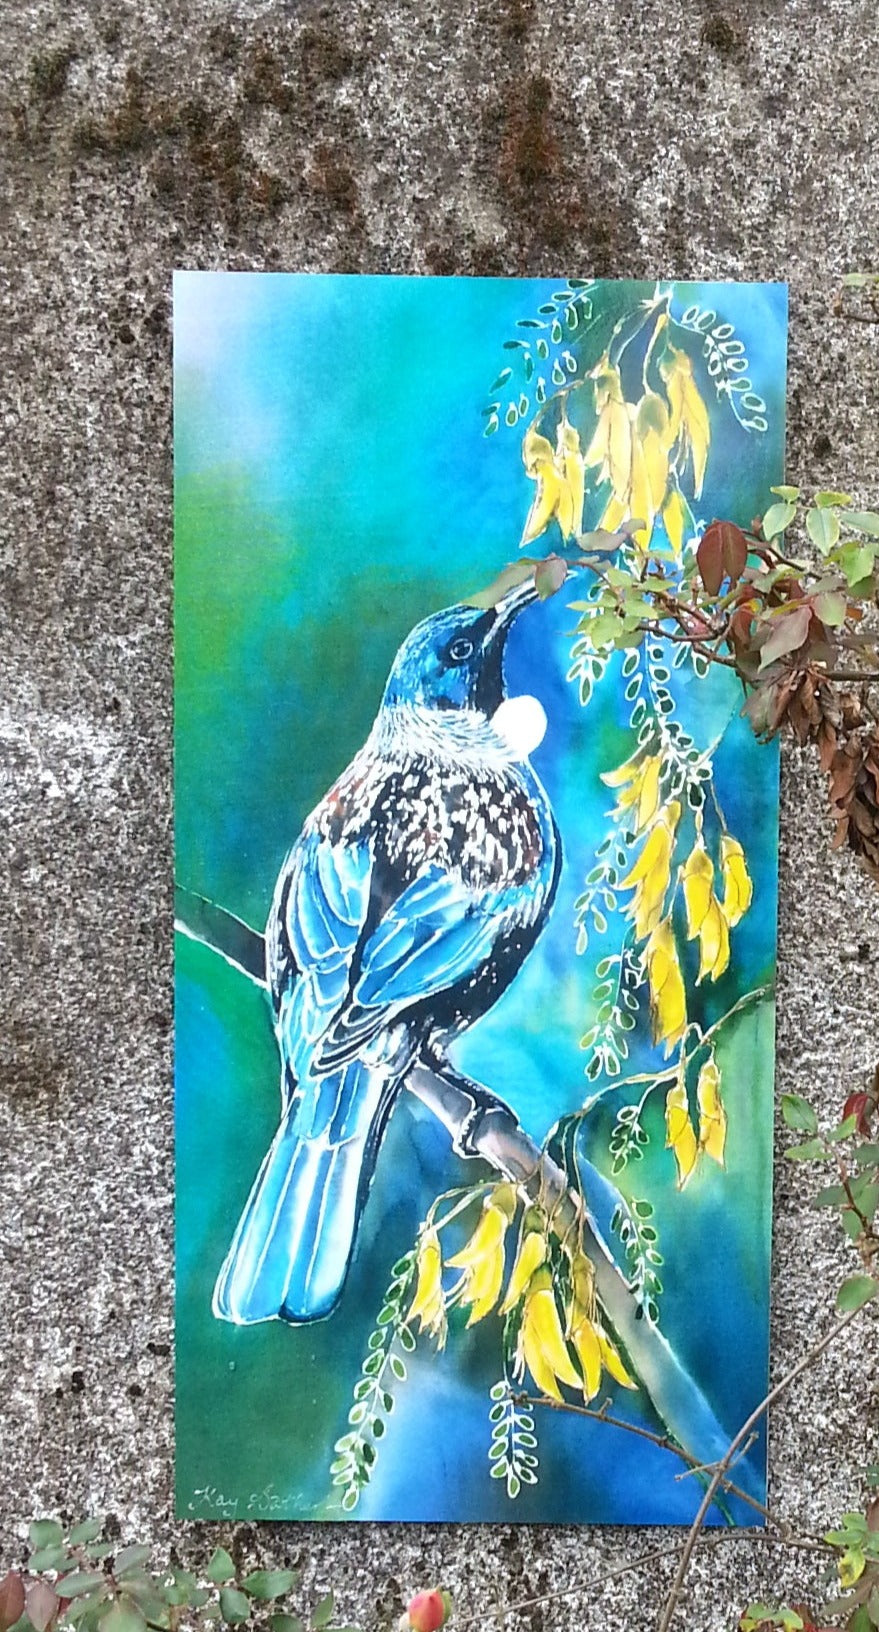 New Zealand Tui Bird on Kowhai Tree - Outdoor Garden Art Panel - Satherley Silks NZ